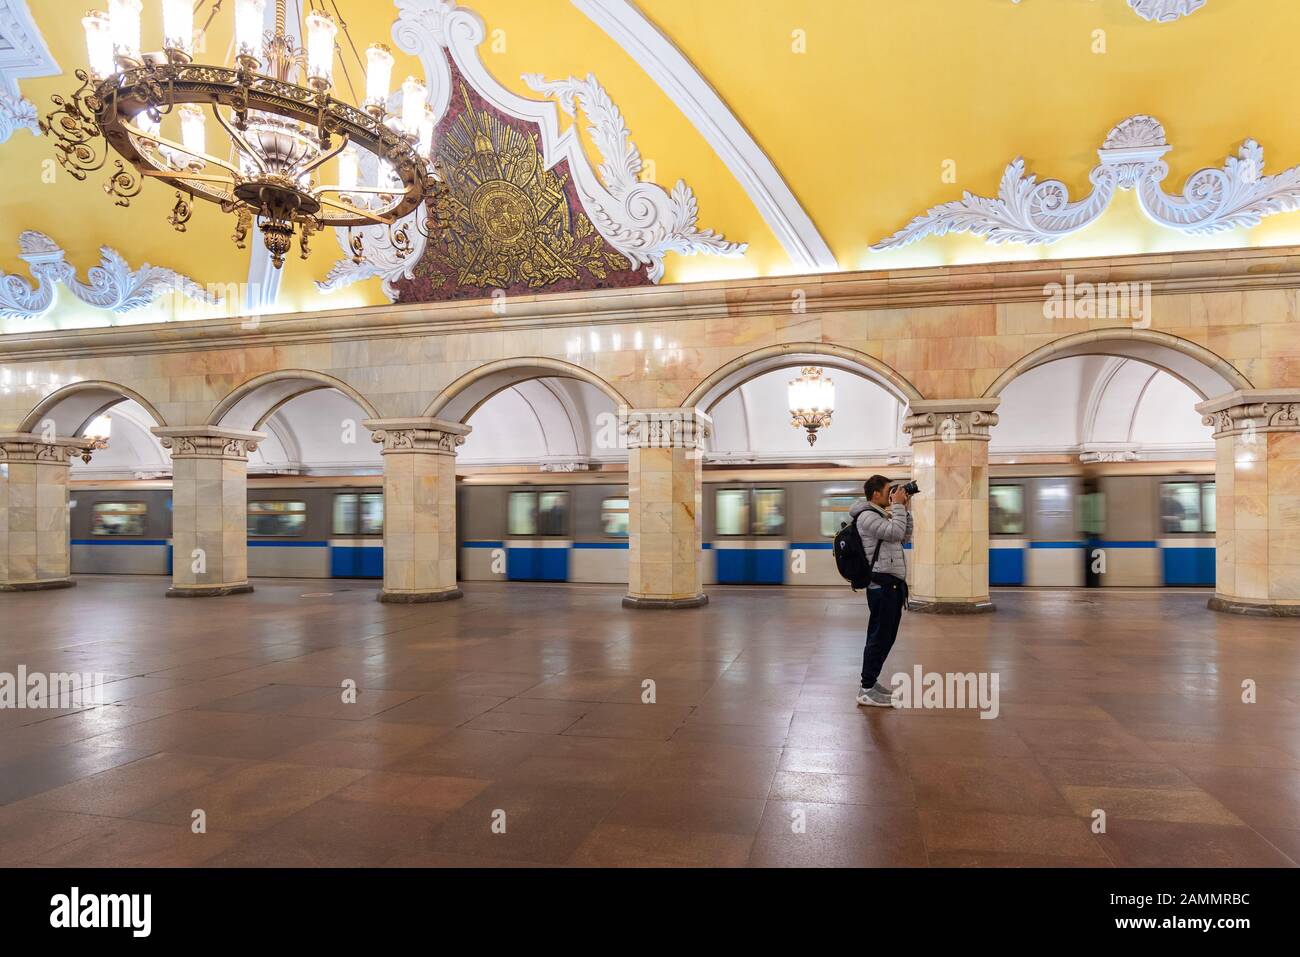 Mosca, Russia-APR8,2018 : interno della stazione della metropolitana Komsomolskaya, aprile 8,2018 a Mosca, Russia. Le stazioni della metropolitana di Mosca sono un sistema di transito rapido Foto Stock